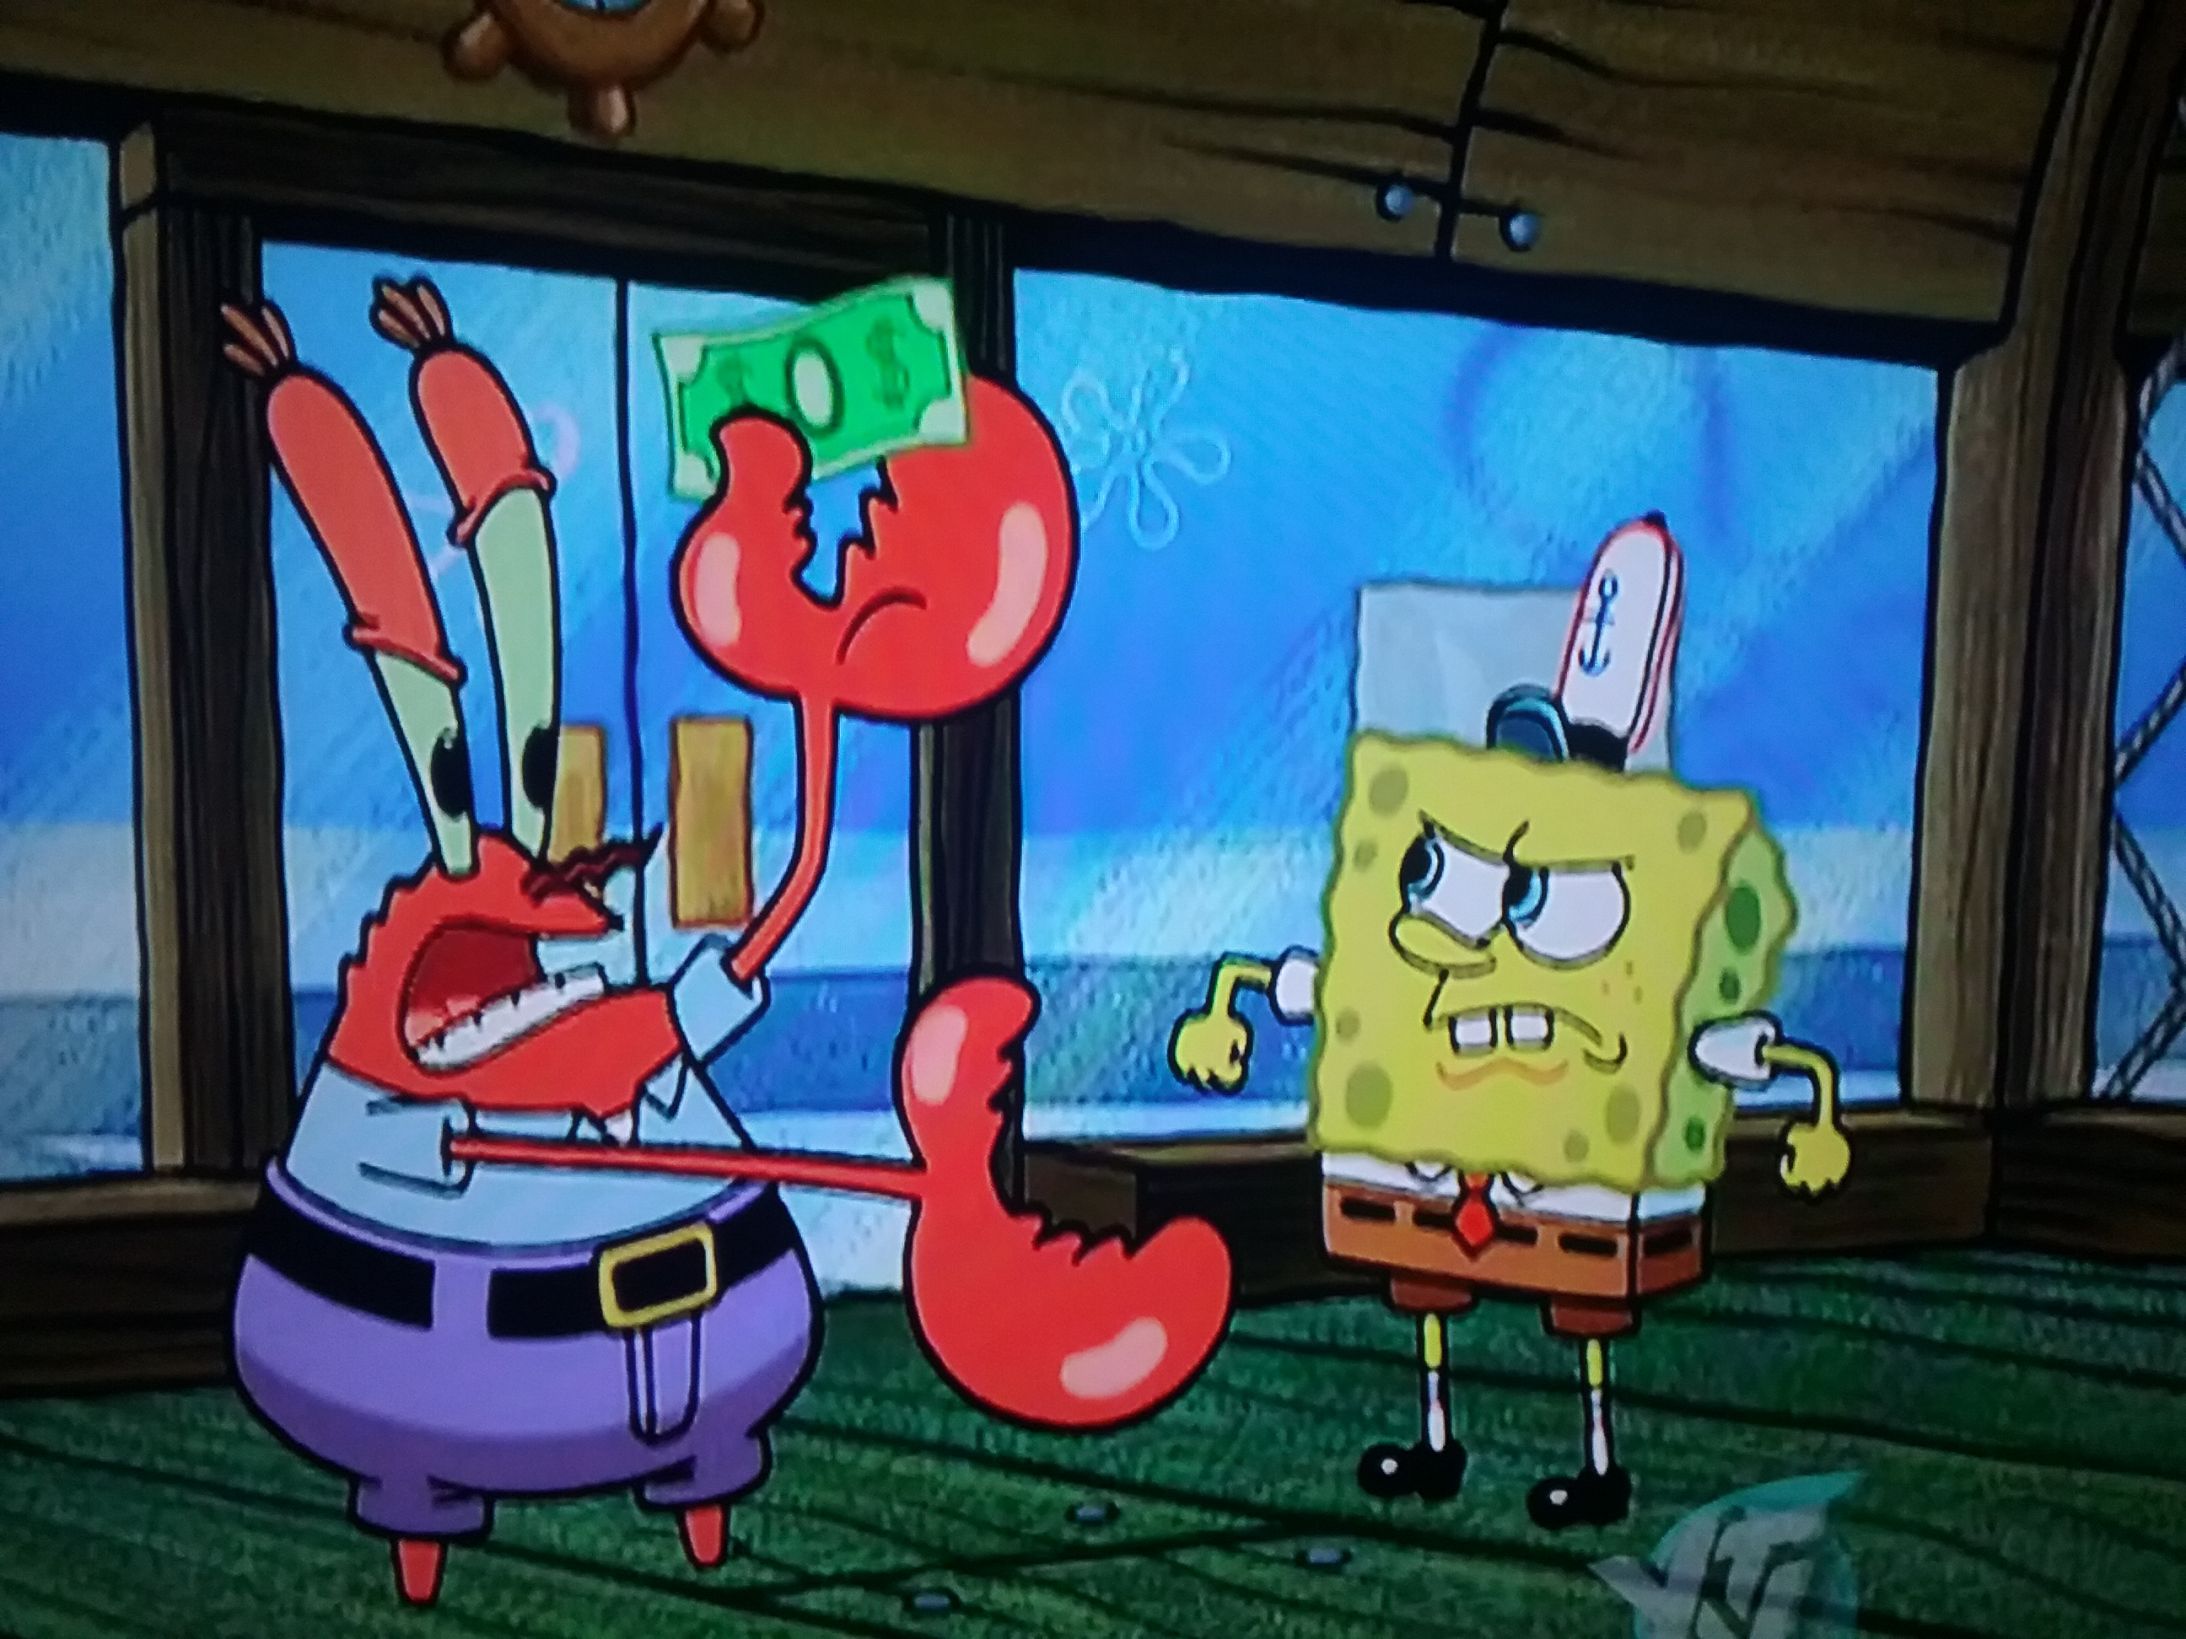 Mr.Krabs fighting with Spongebob. 